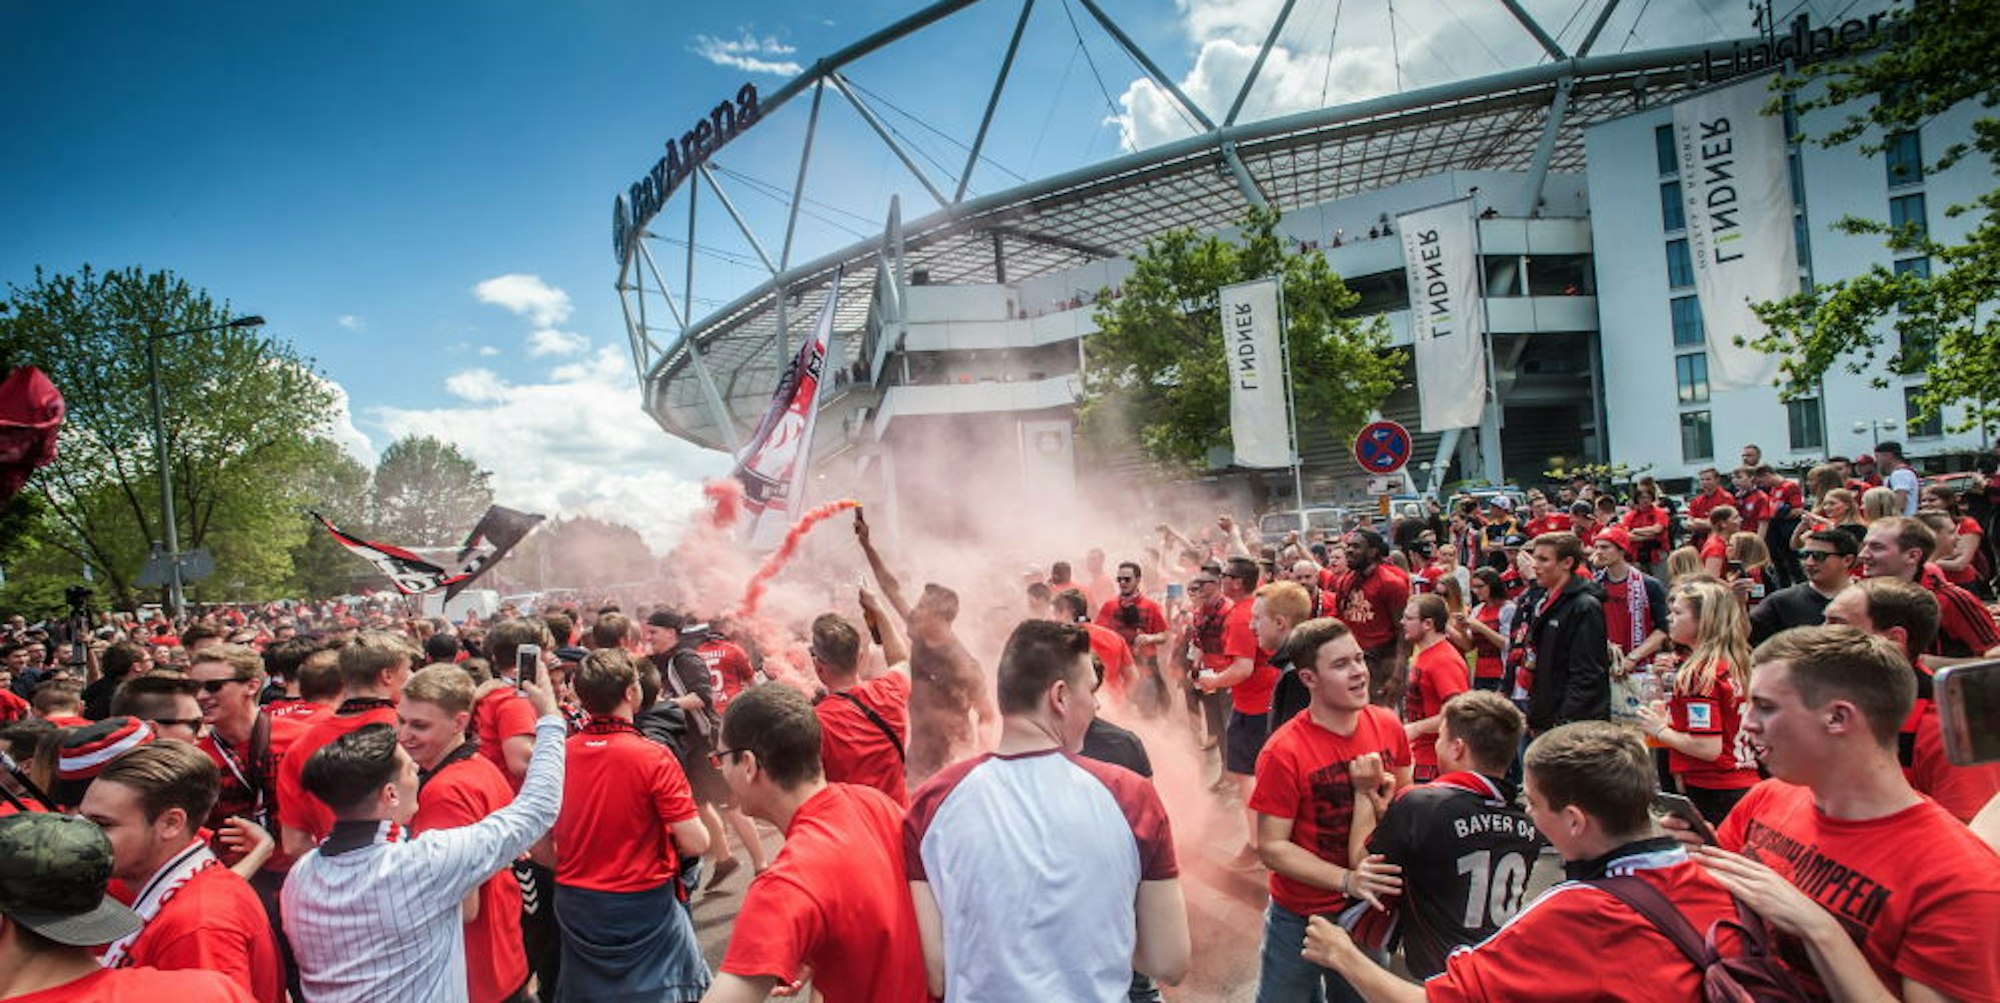 Im Pulk feiernde Fans vor der BayArena – solche Szenen soll es bei möglichen Geisterspielen der Bundesliga in Leverkusen nicht geben.